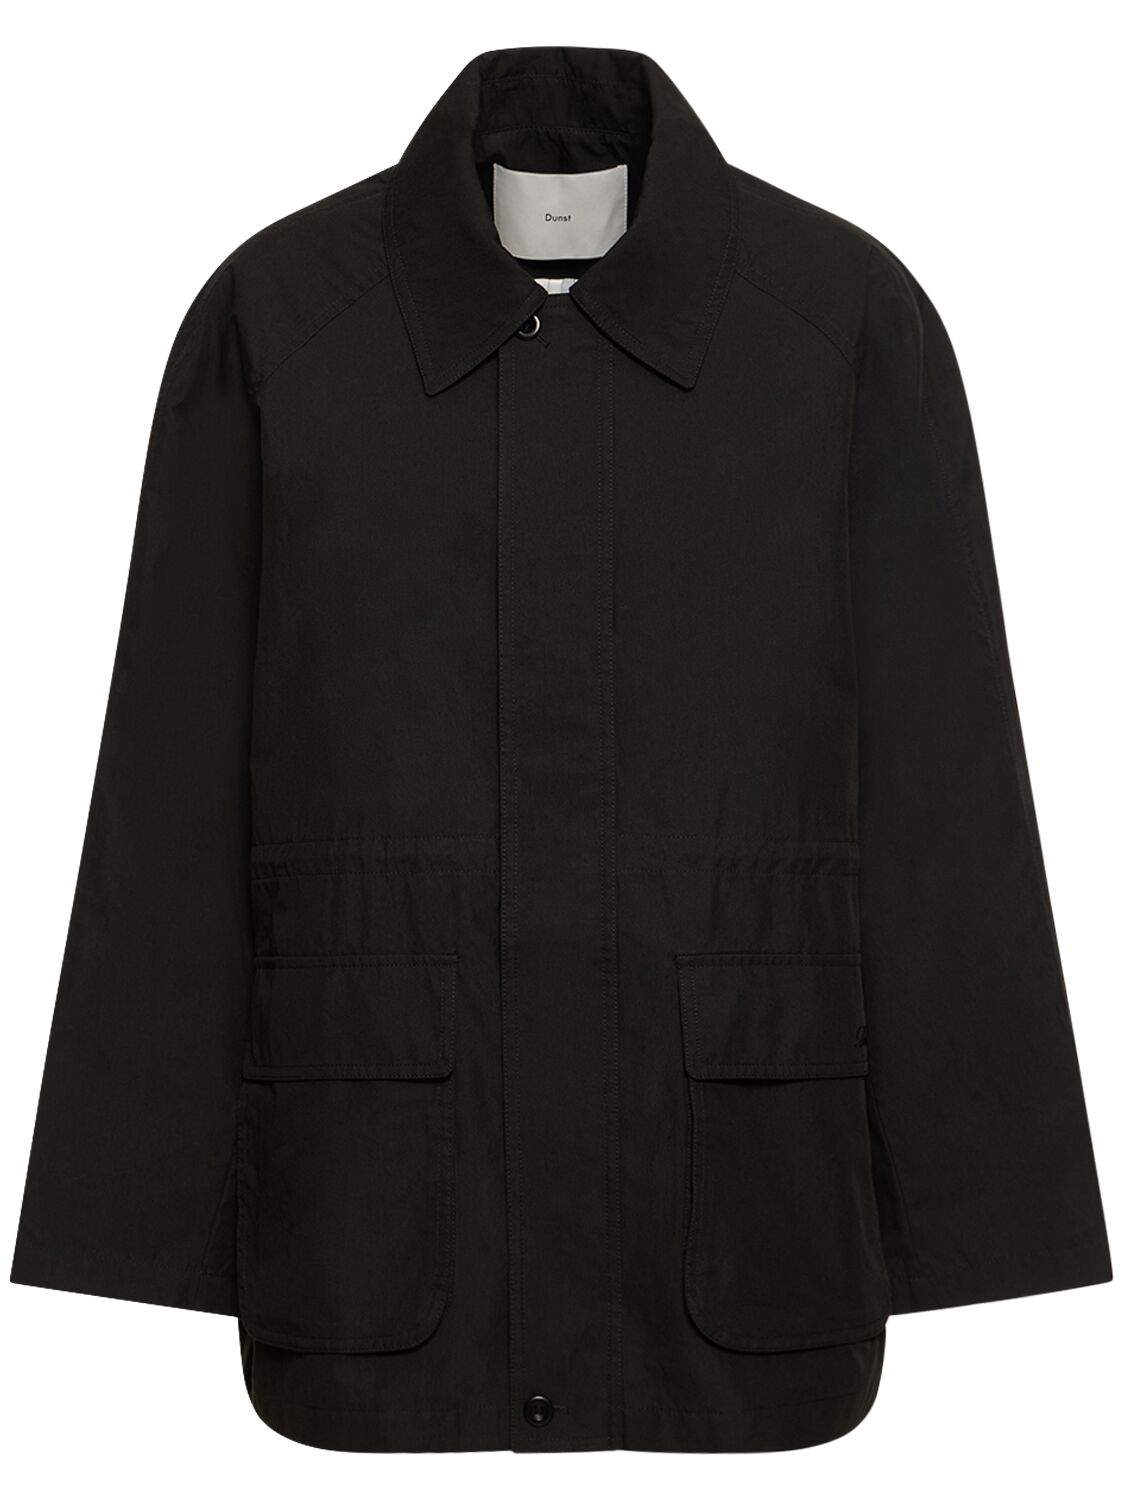 Dunst Half Mac Cotton & Nylon Jacket In Black